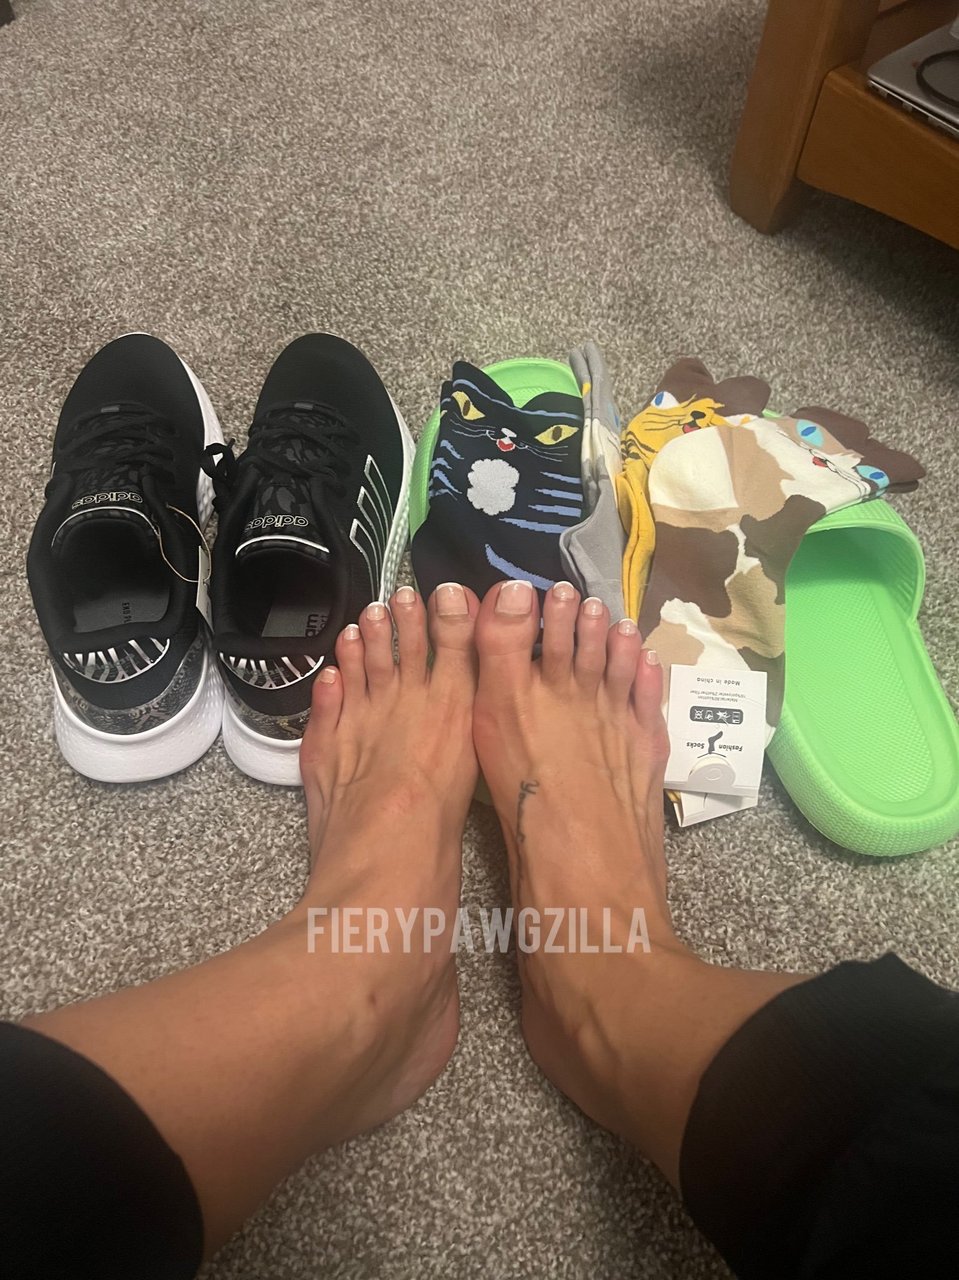 Pawgzilla Feet